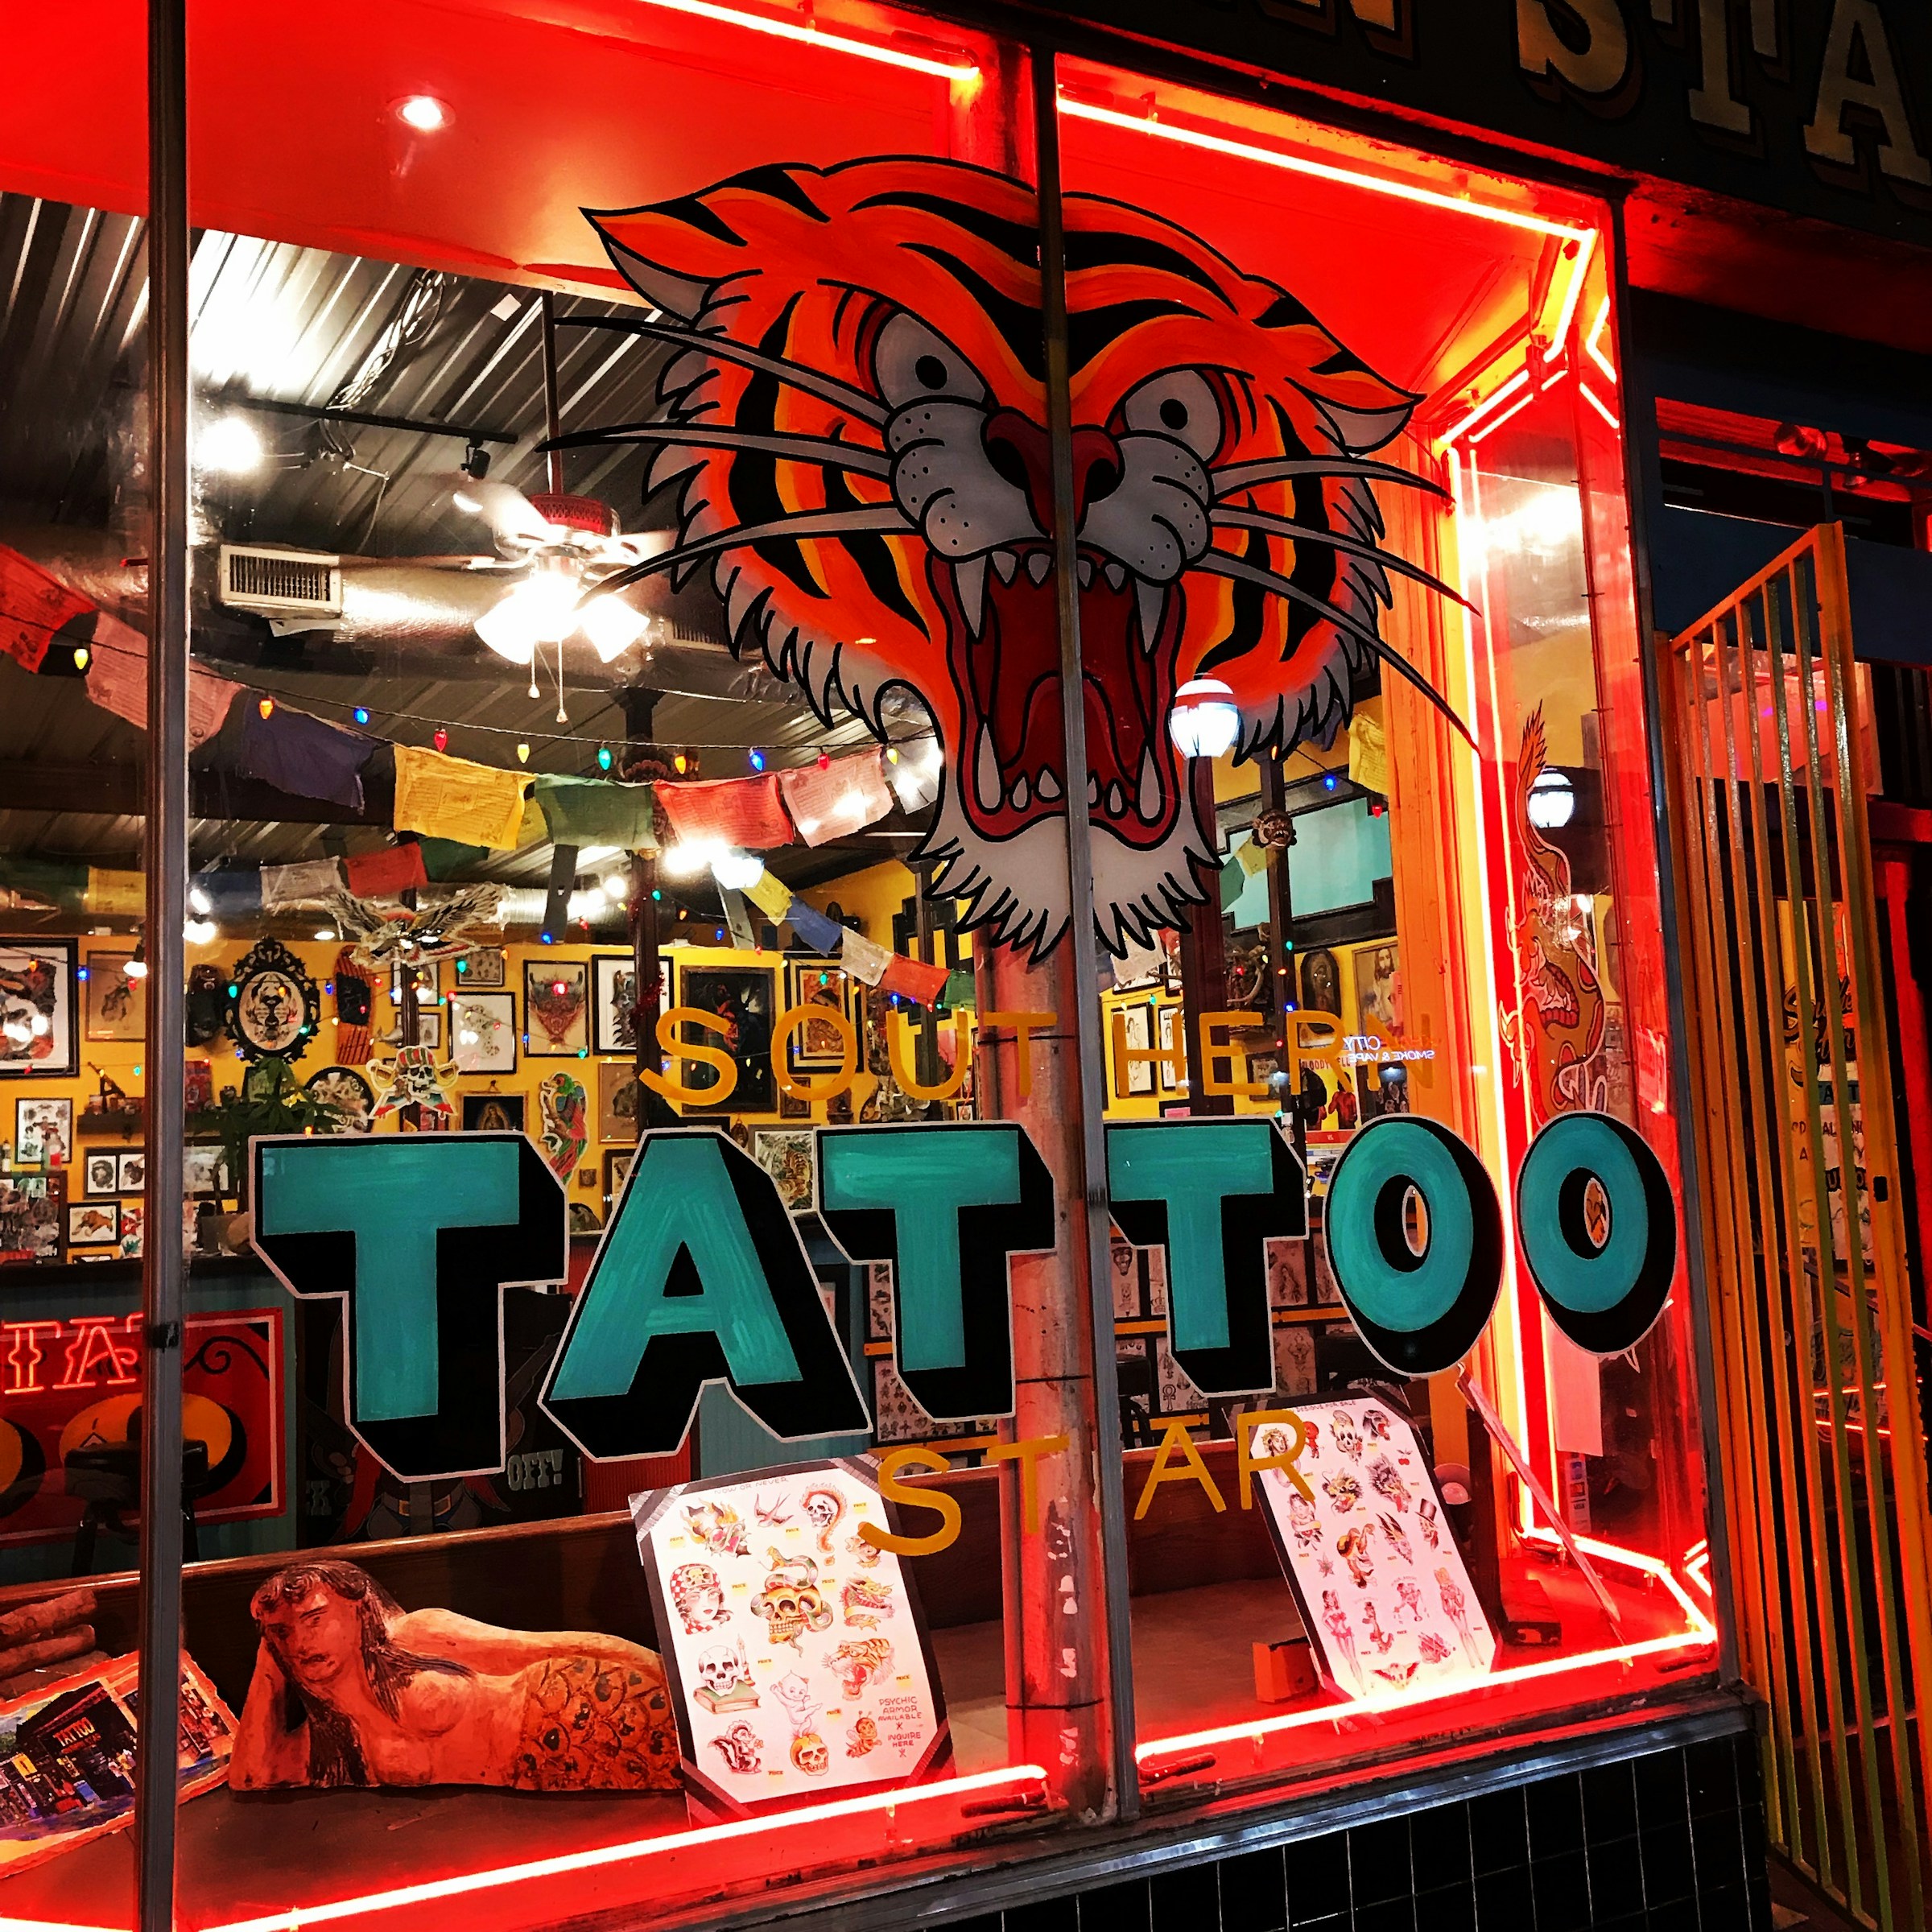 Tattoo parlor | Source: Unsplash